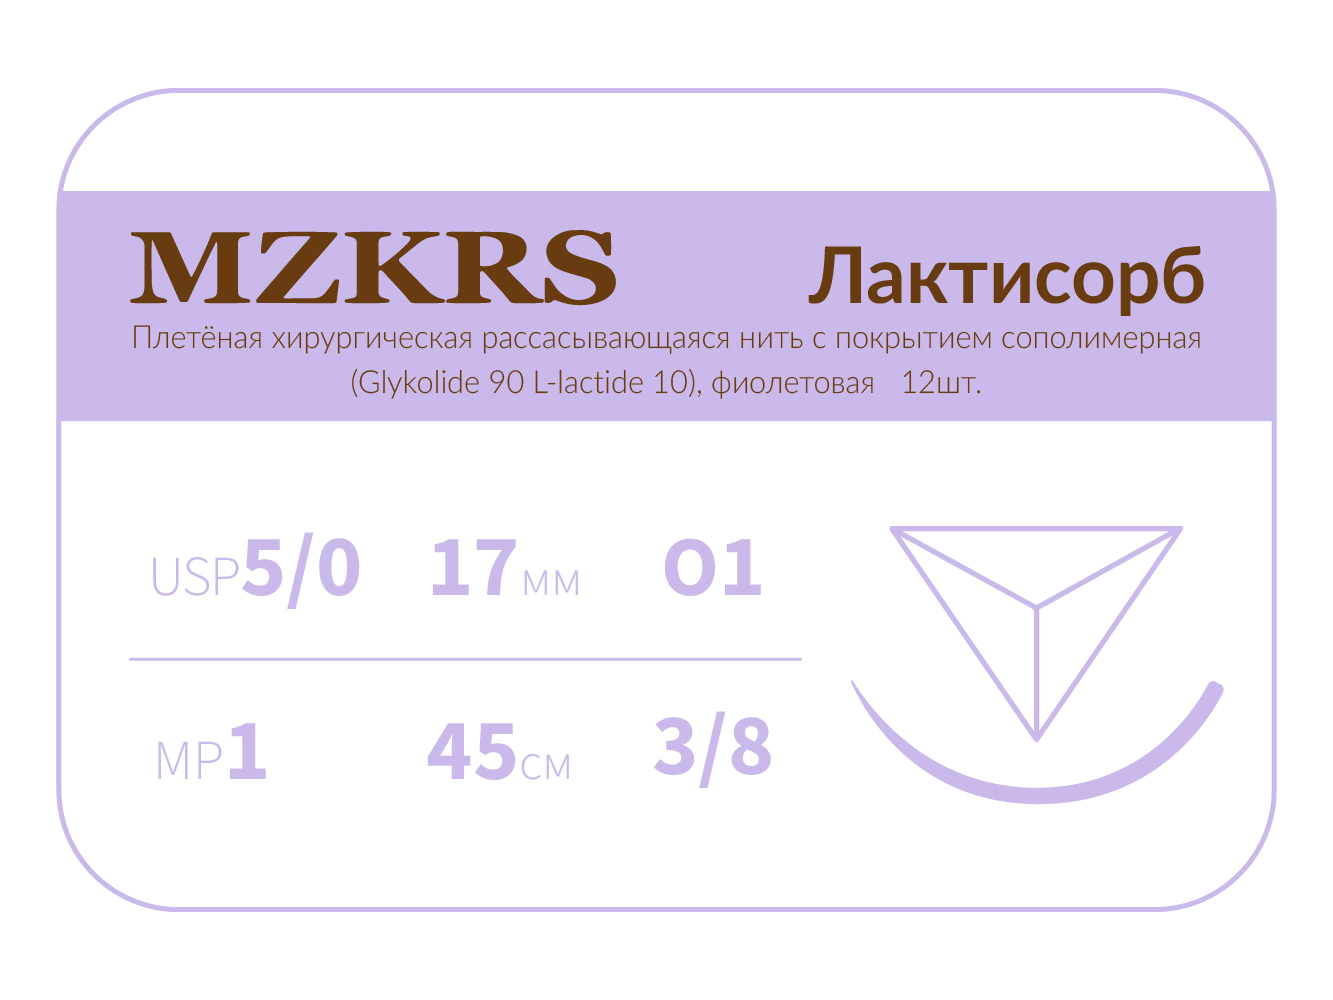 1738О1 Premium-5/0 (1)45 ПГЛ ЛАКТИСОРБ хирургическая нить сополимерная, обратно-режущая игла, MZKRS (Россия)